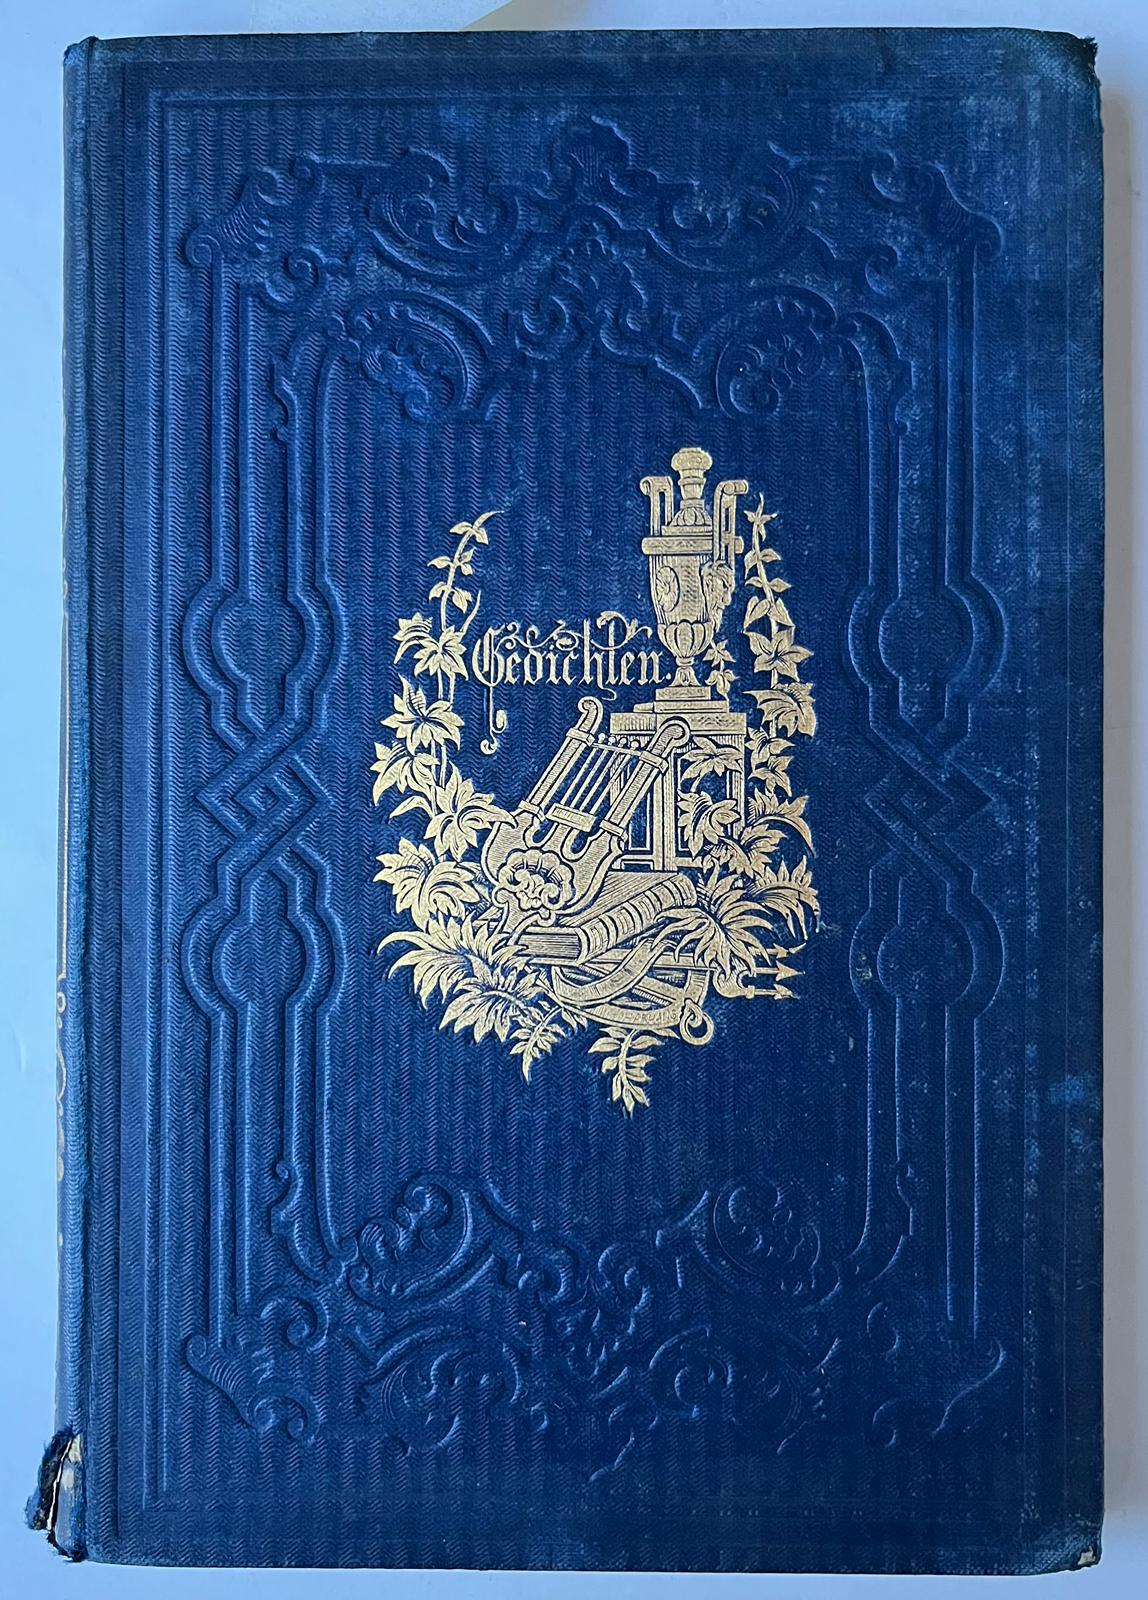 [Literature 1854] Verspreide gedichten. Schiedam, H.A.M. Roelants, 1854, [7]163 [1] pp.